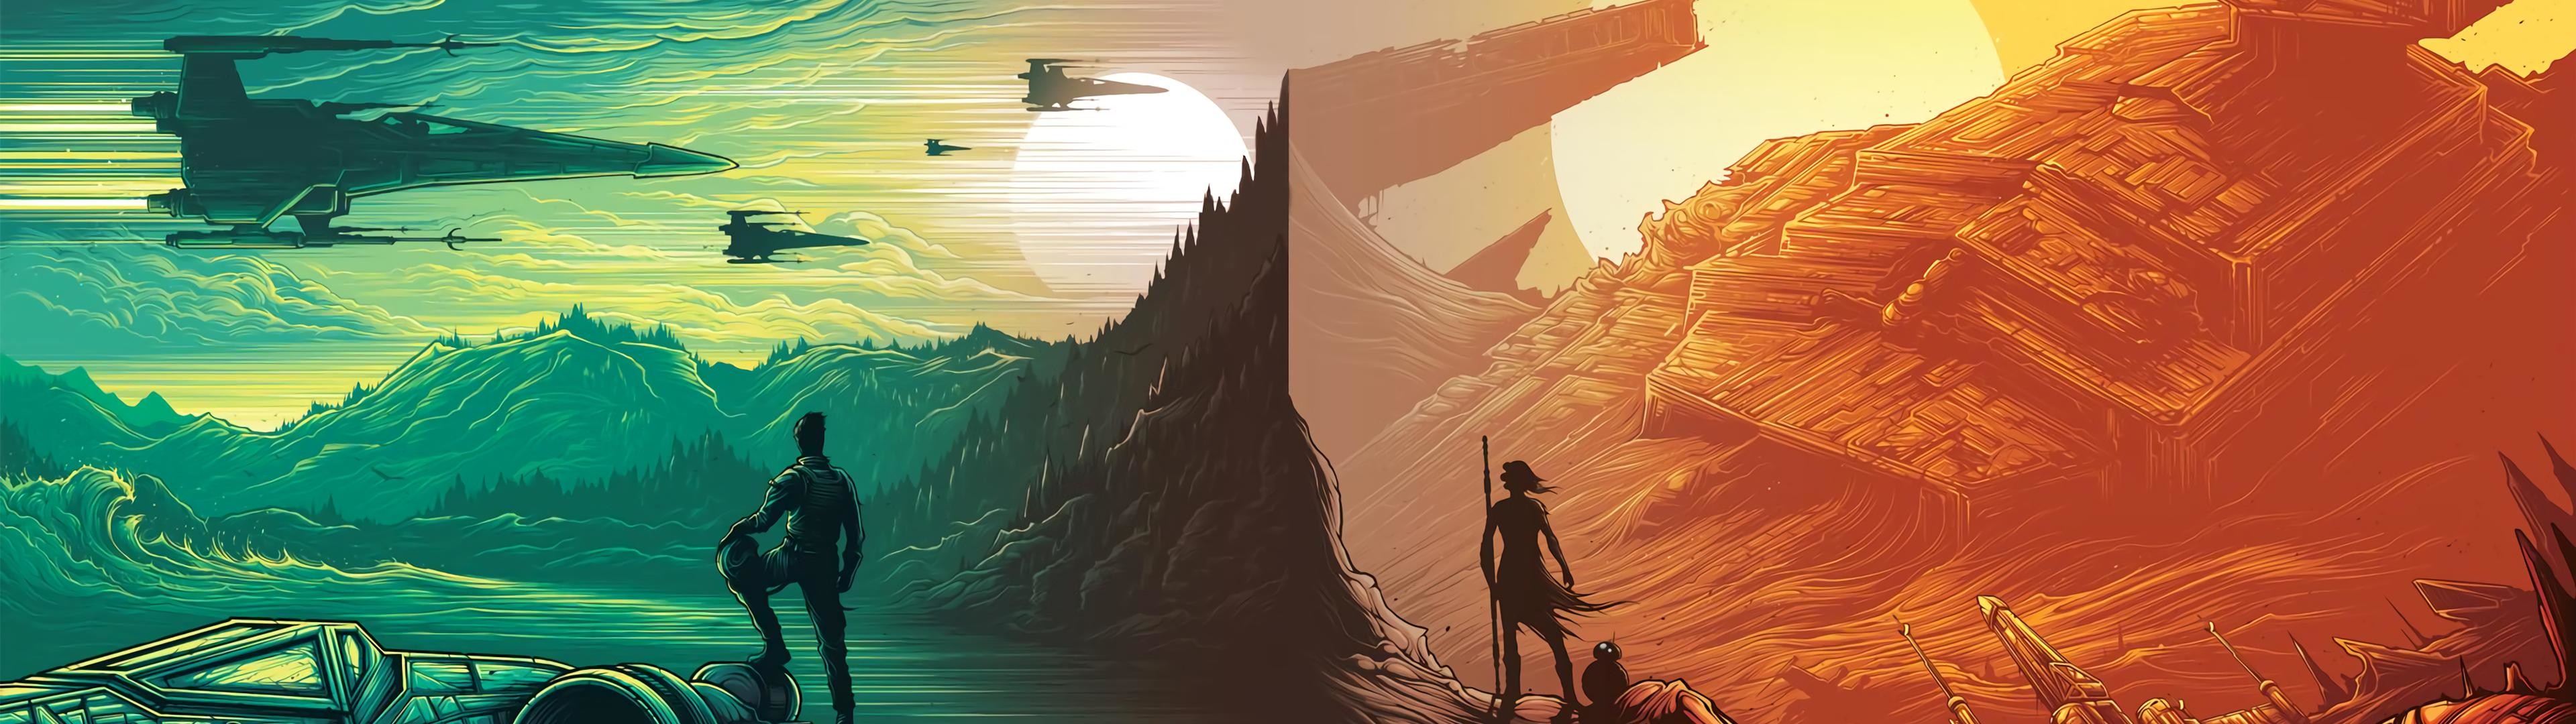 fondo de pantalla dual de star wars,juego de acción y aventura,ilustración,cielo,arte,cg artwork